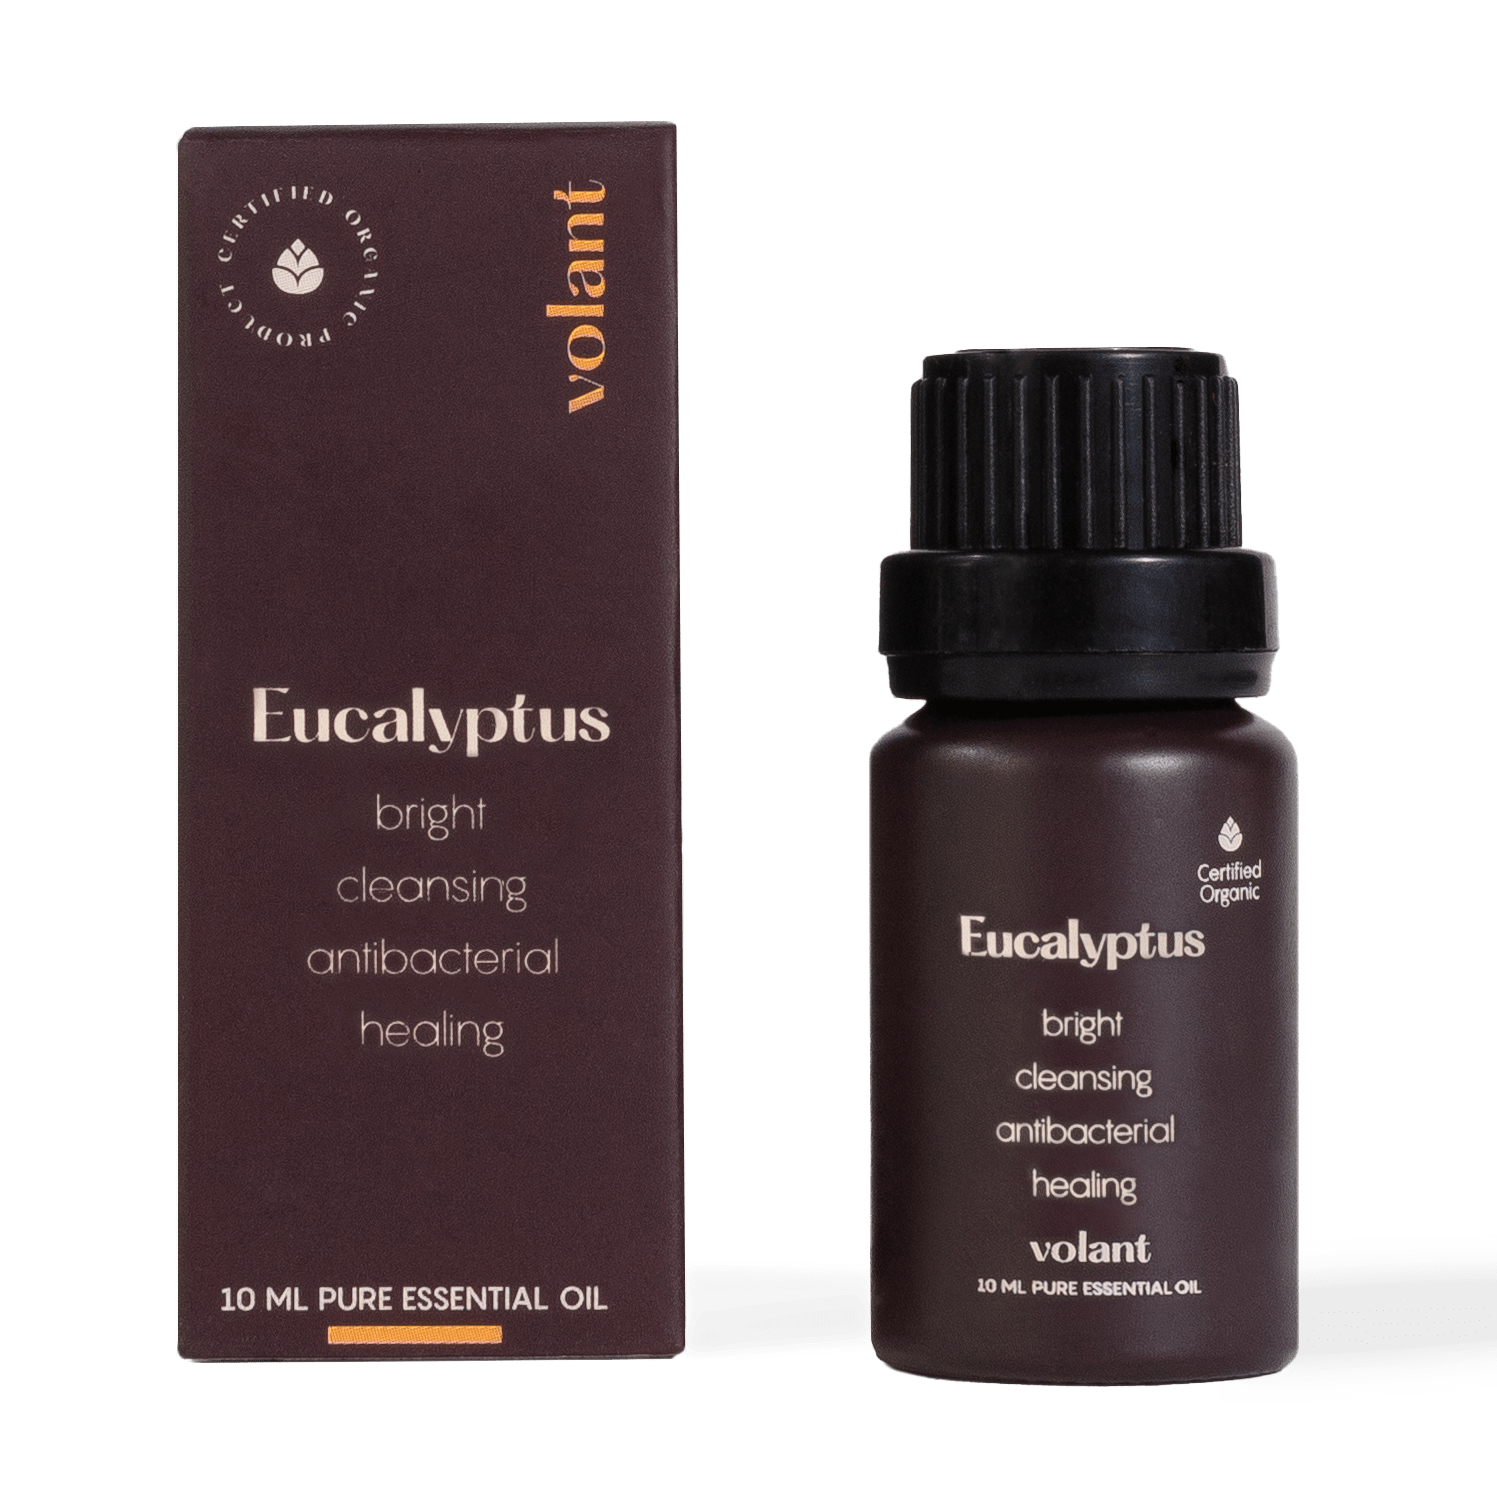 Volant ekologisk eukalyptus eterisk olja flaskförpackning för att lindra nästäppa